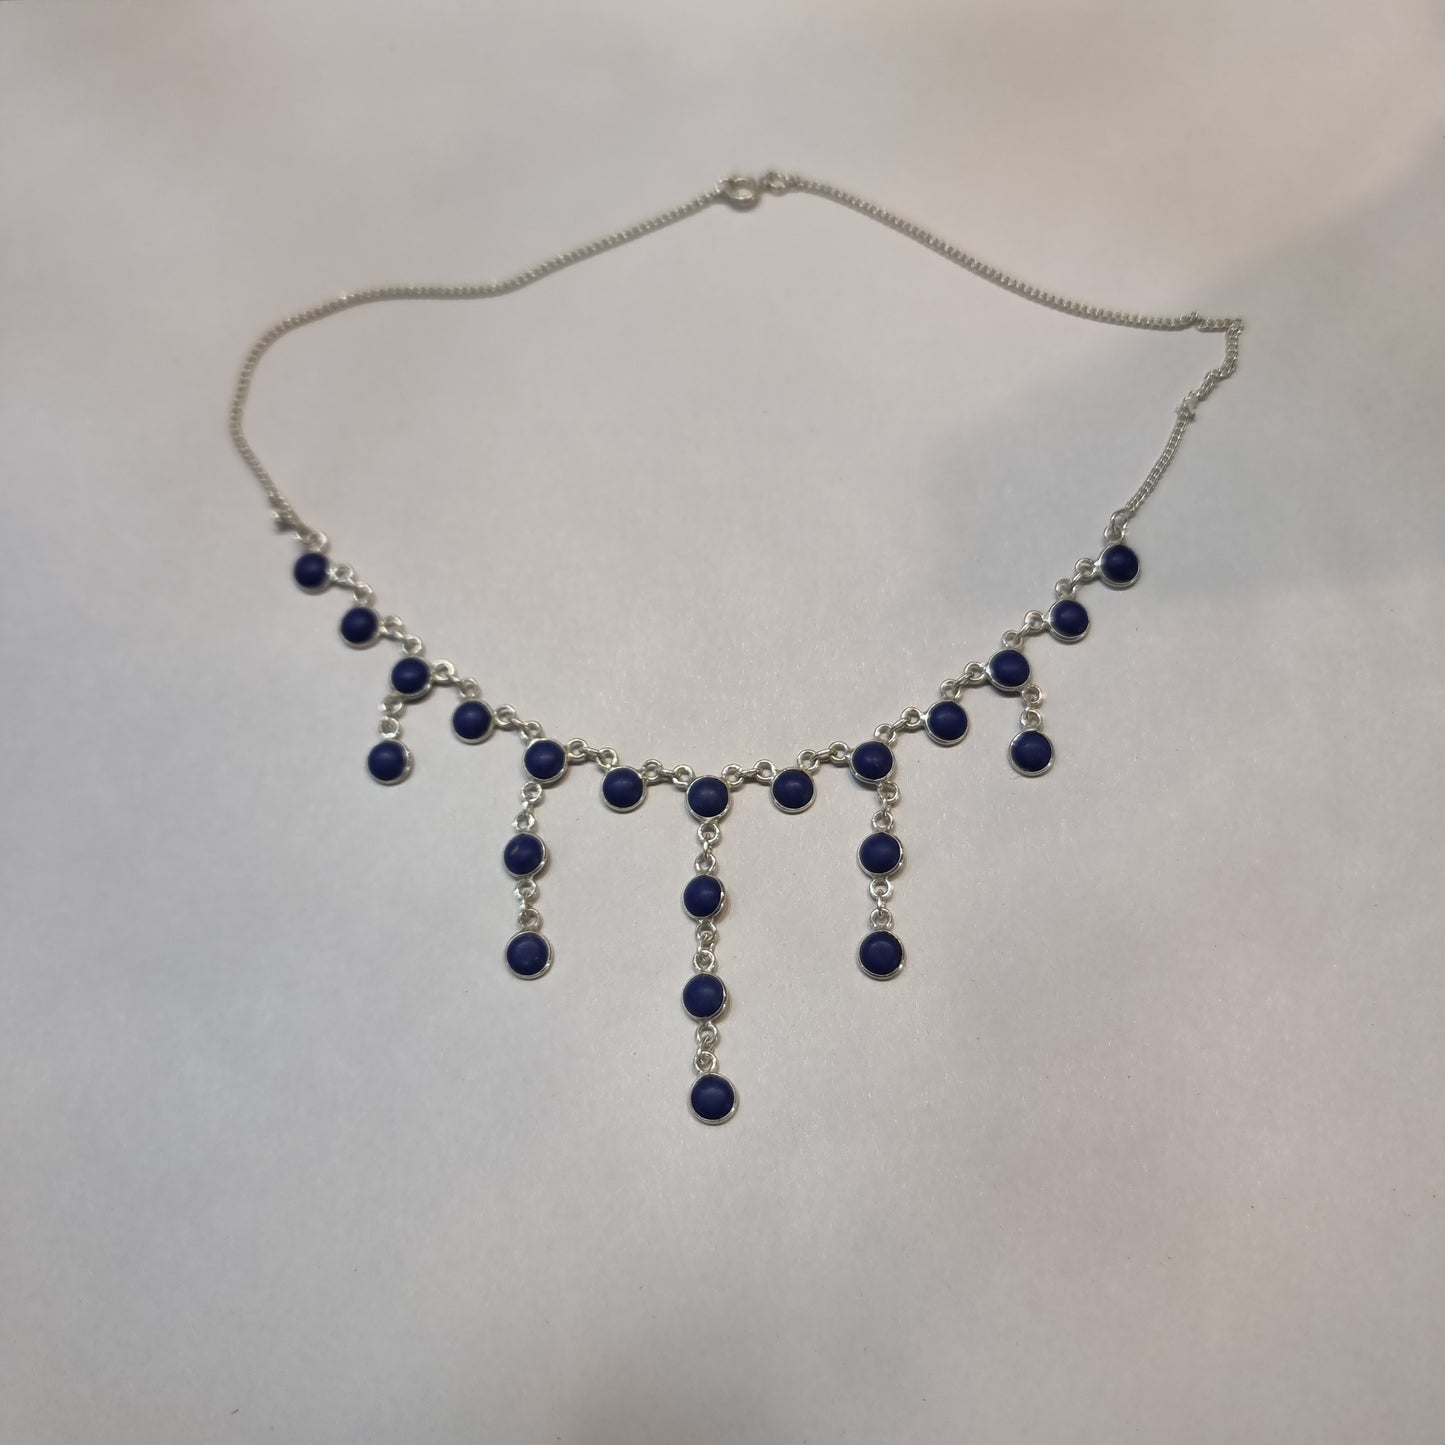 Lapis lazuli necklace - Rivendell Shop